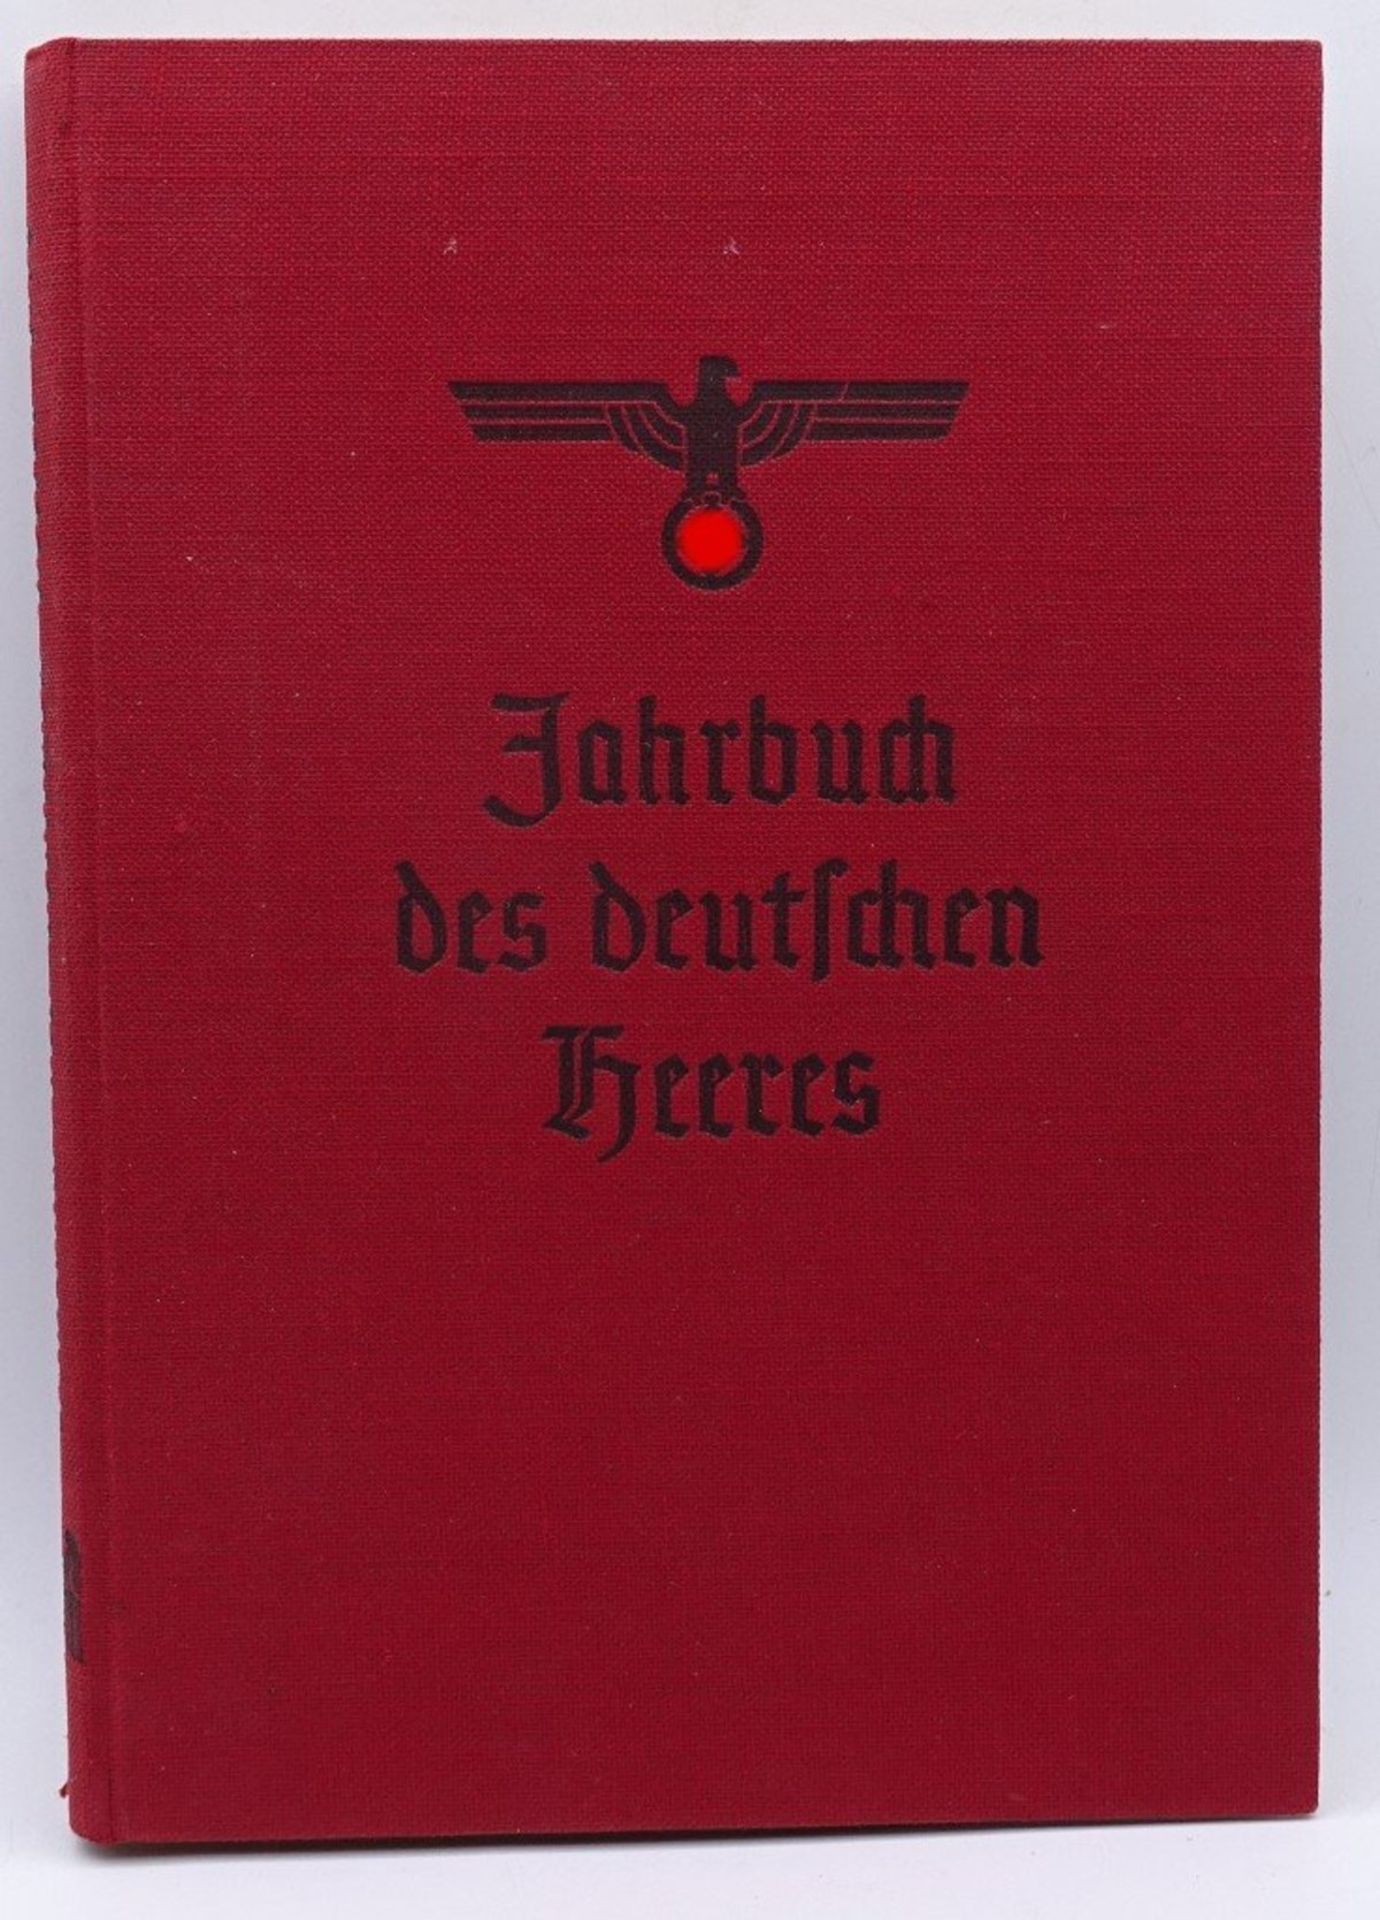 Jahrbuch des deutsches Heeres 1938